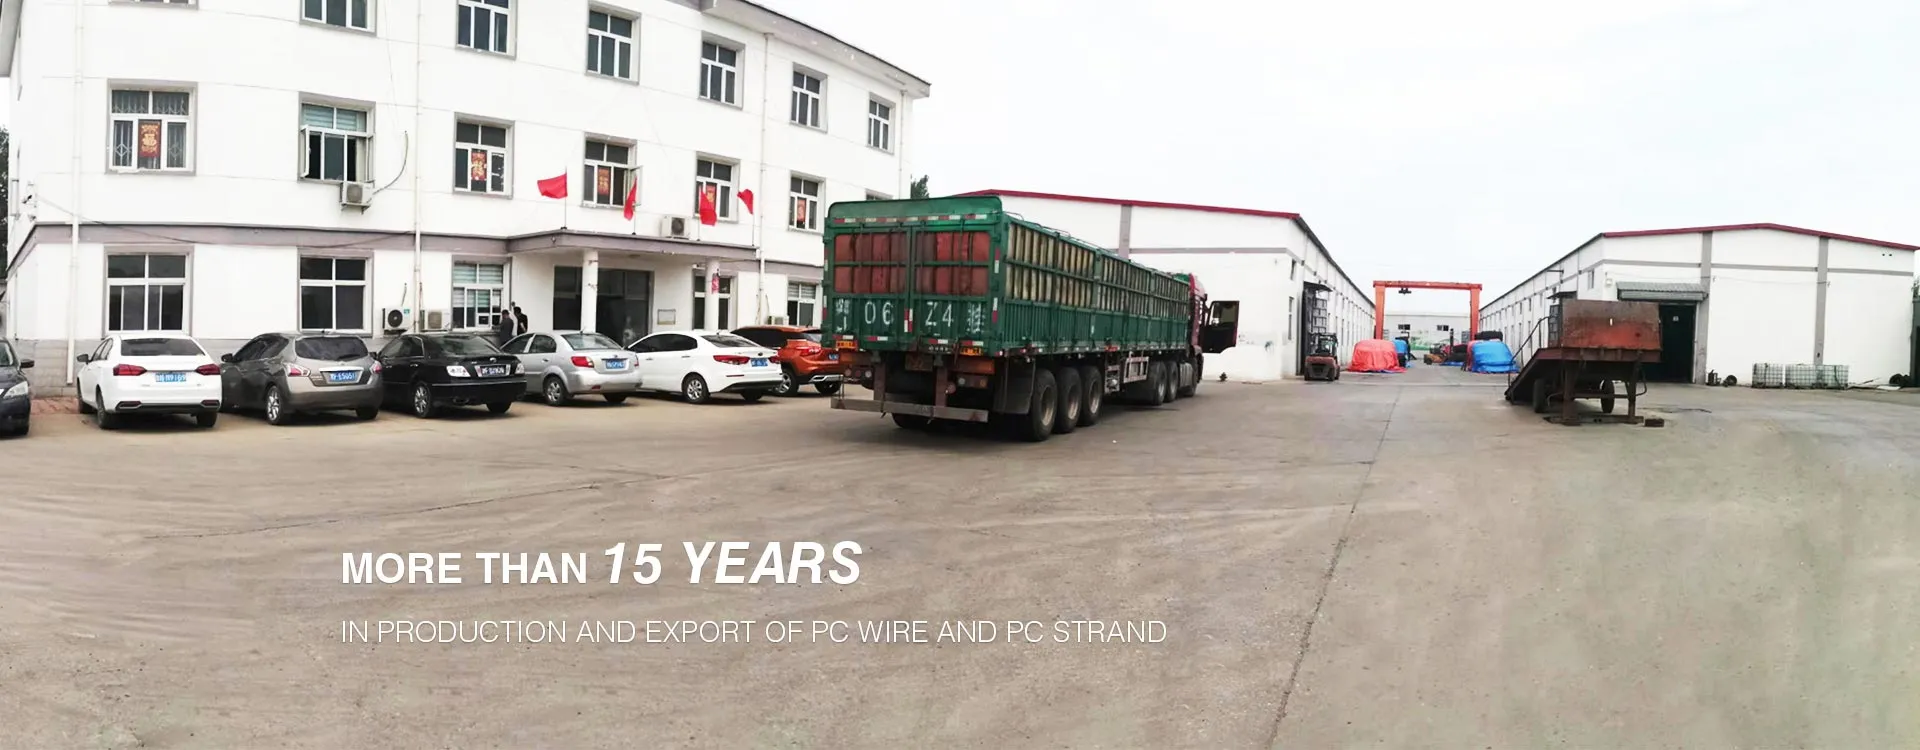 Tianjin Huayongxin Prestressed Steel Wire Co., Ltd.